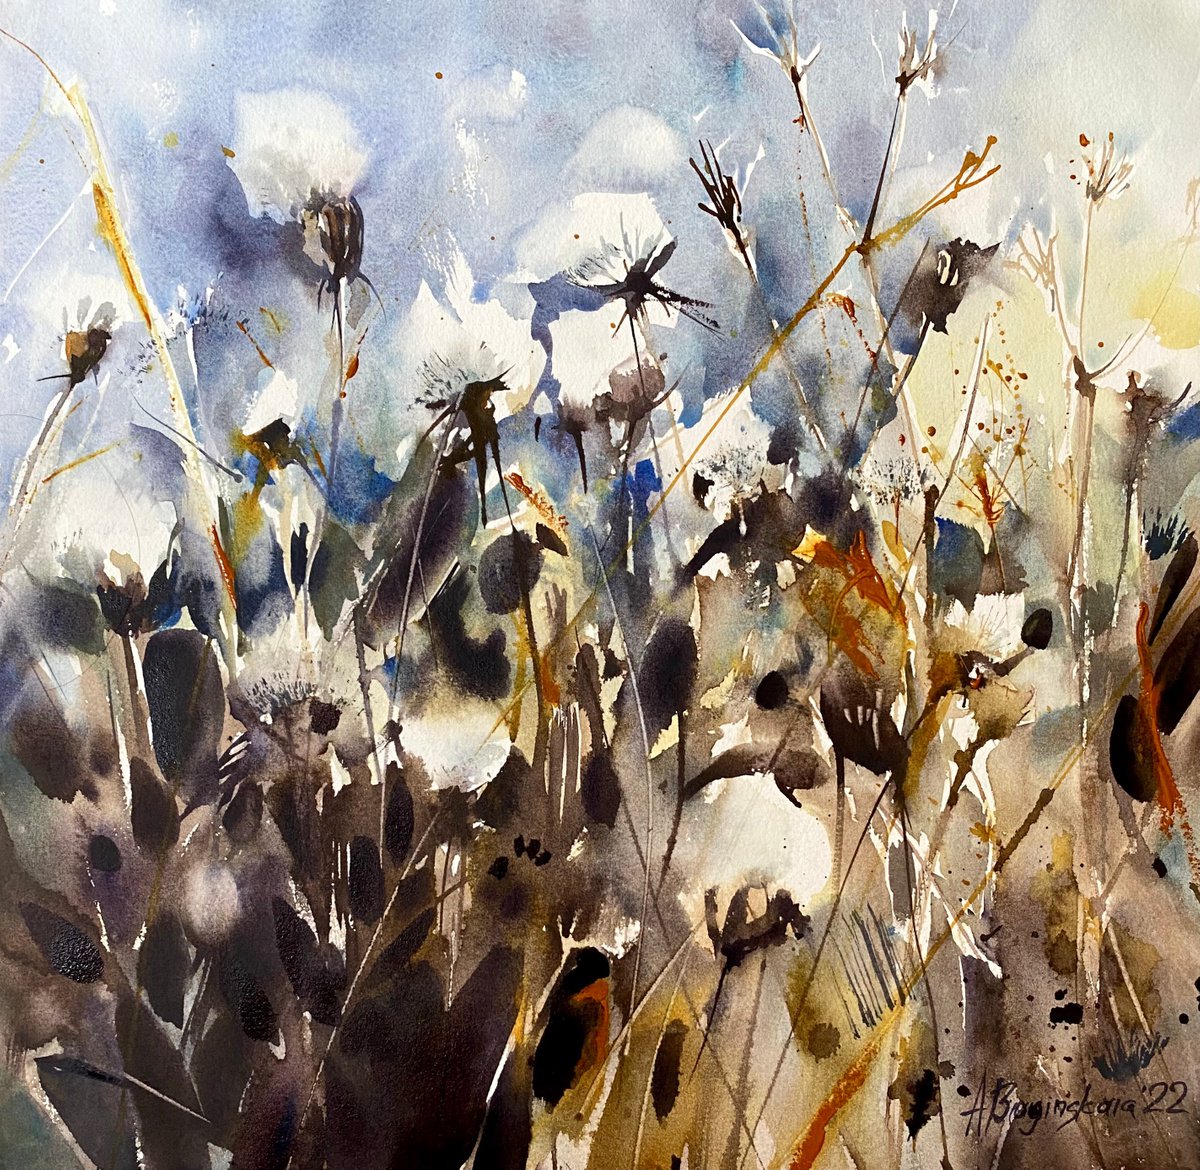 Cottony herbs - original floral watercolor by Anna Boginskaia